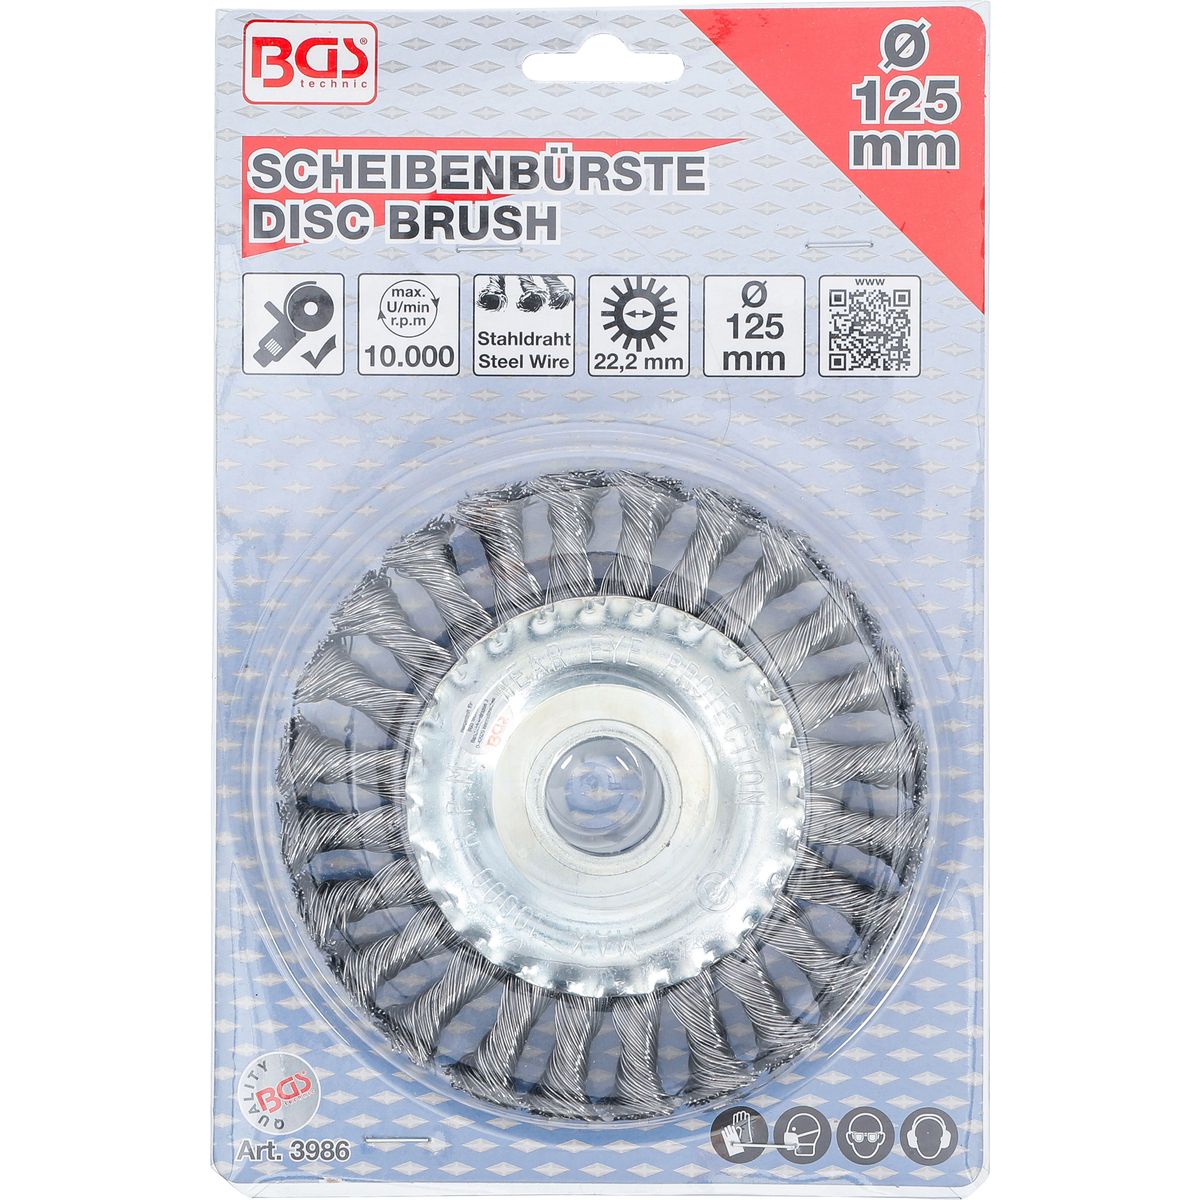 Disc Brush / knotted round Brush | Ø 125 mm